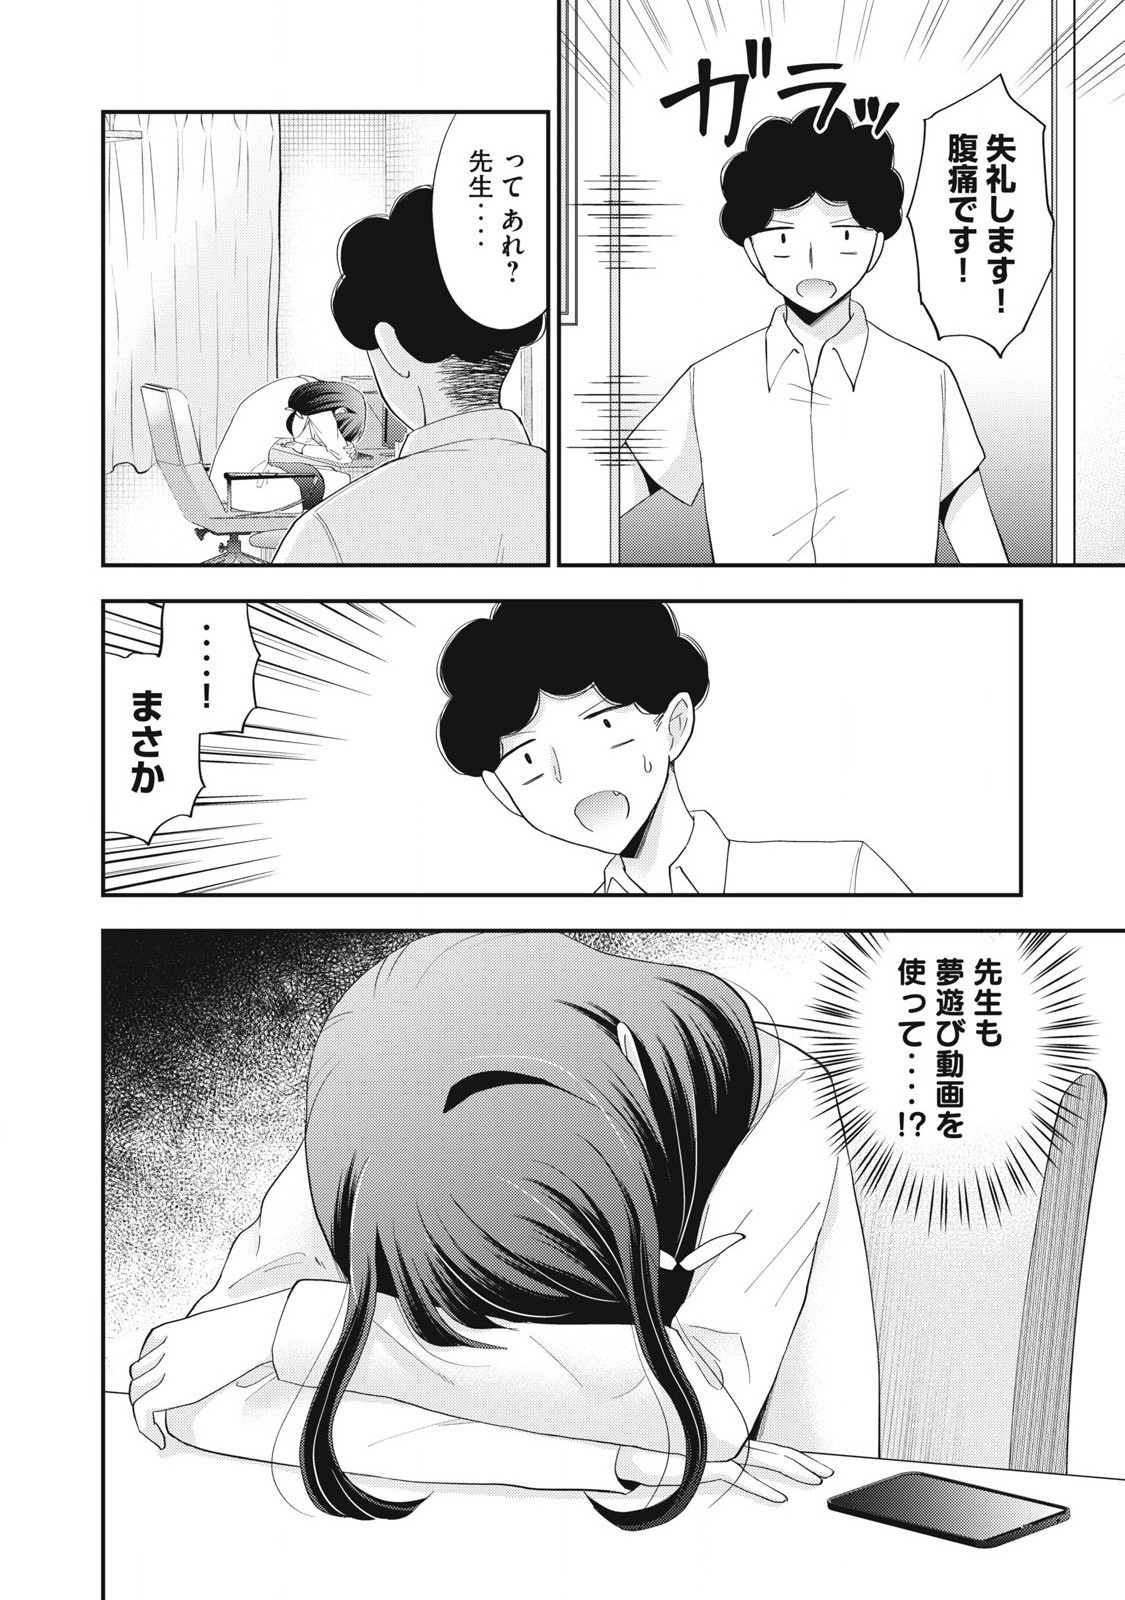 Yumeutsutsu no Hana no Sono - Chapter 24 - Page 14